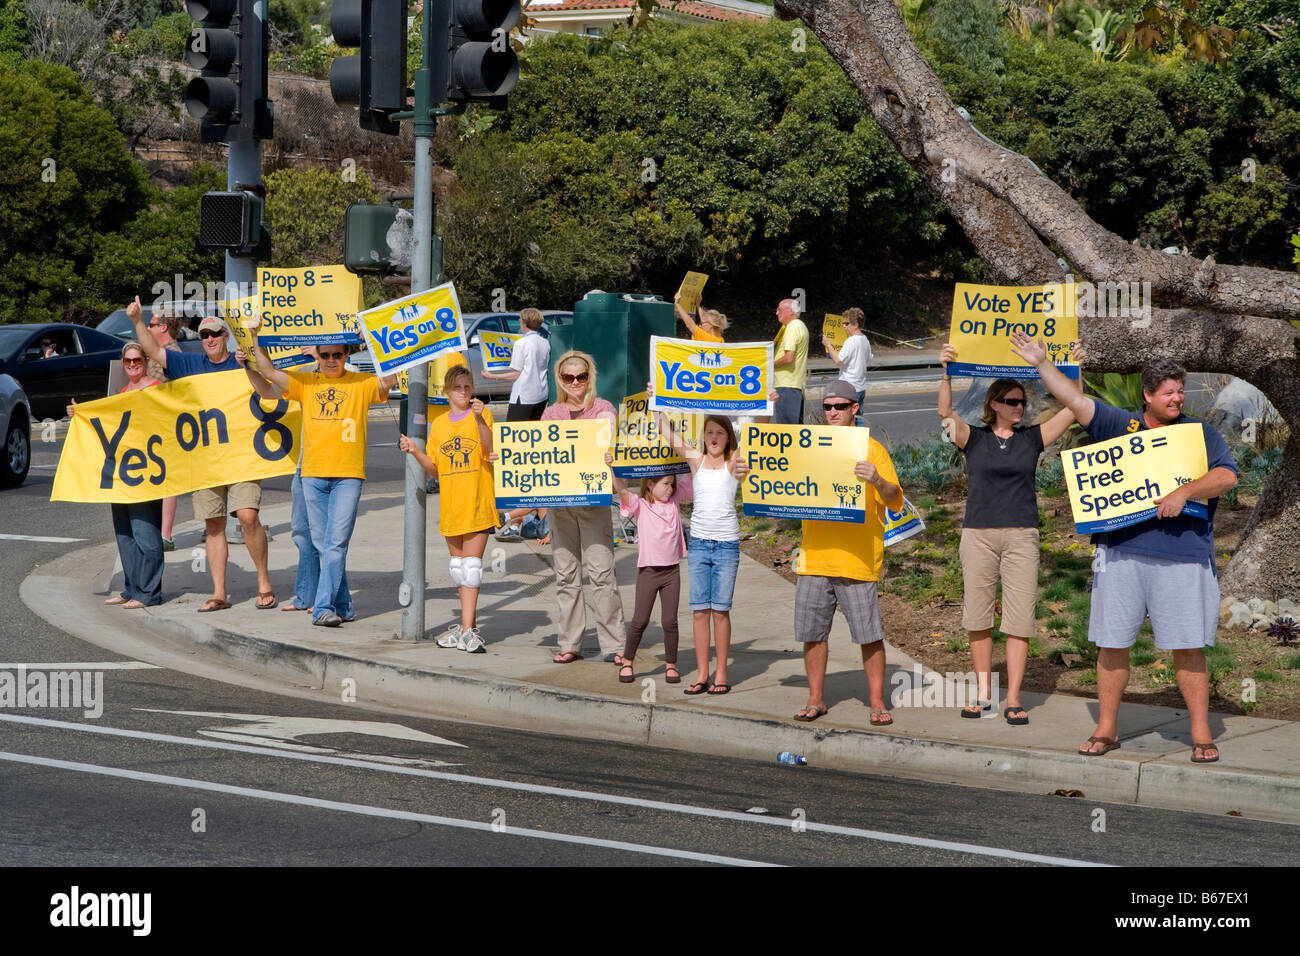 Les manifestants protestent contre la proposition de vote de l'état à l'Autoroute de la côte pacifique dans la région de Laguna Niguel, CA, USA Banque D'Images